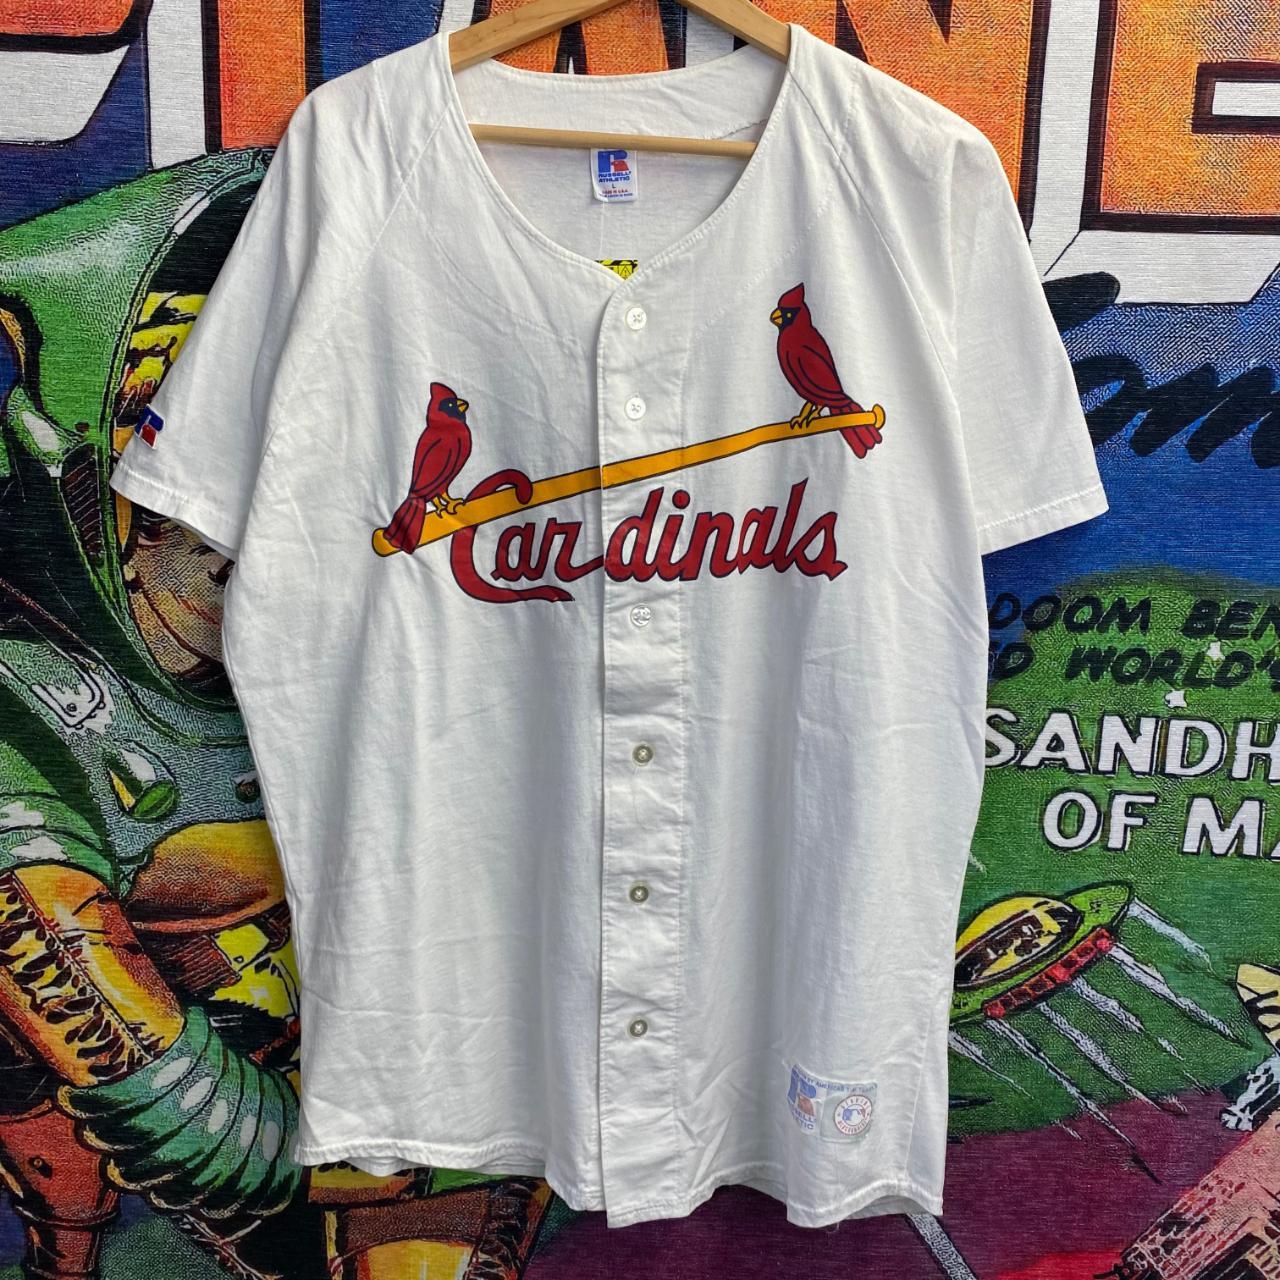 St. Louis Cardinals T-Shirt Men's Size Large L Short - Depop